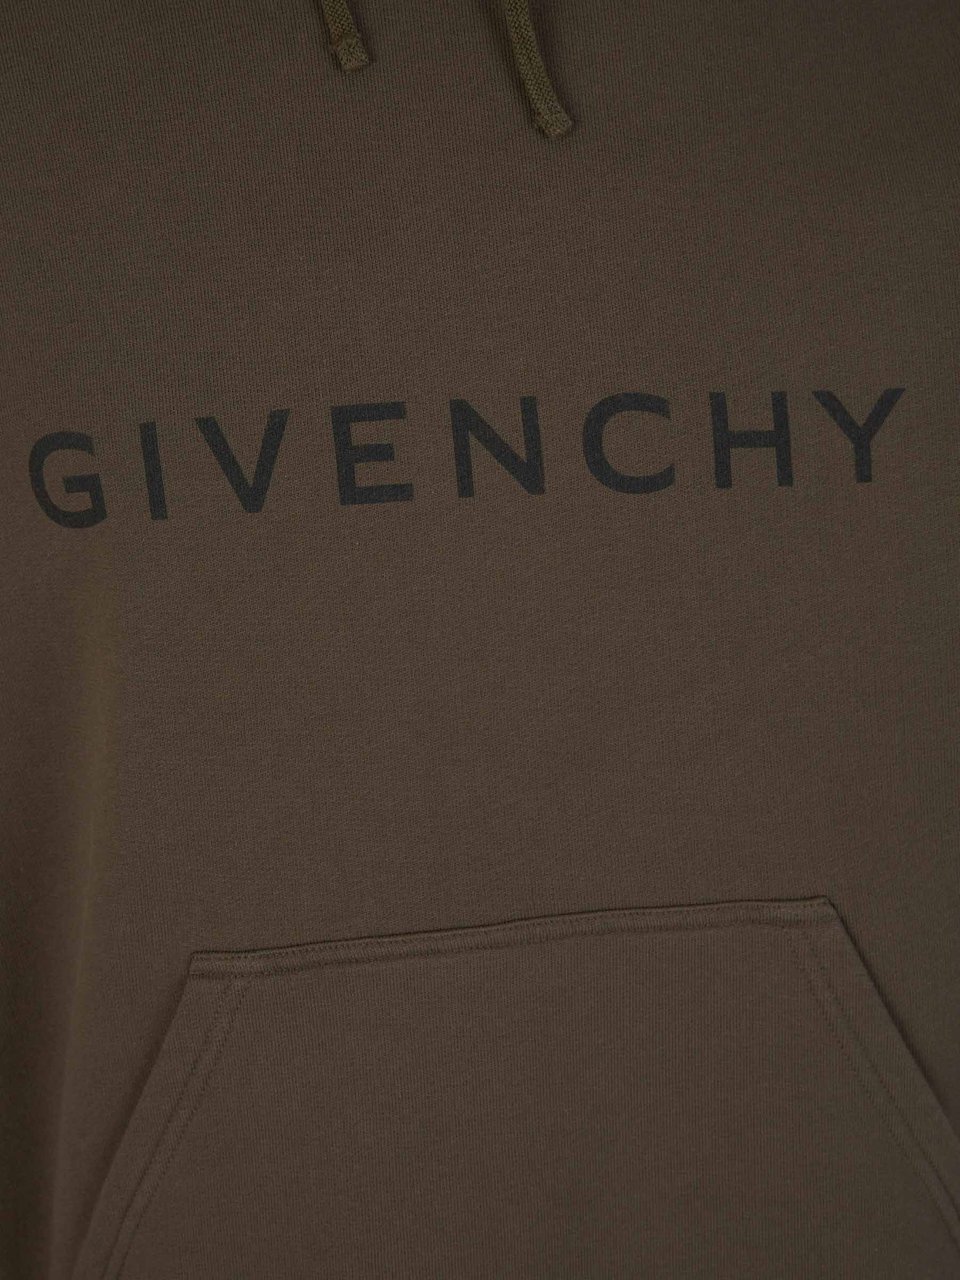 Givenchy Logo Hood Sweatshirt Groen